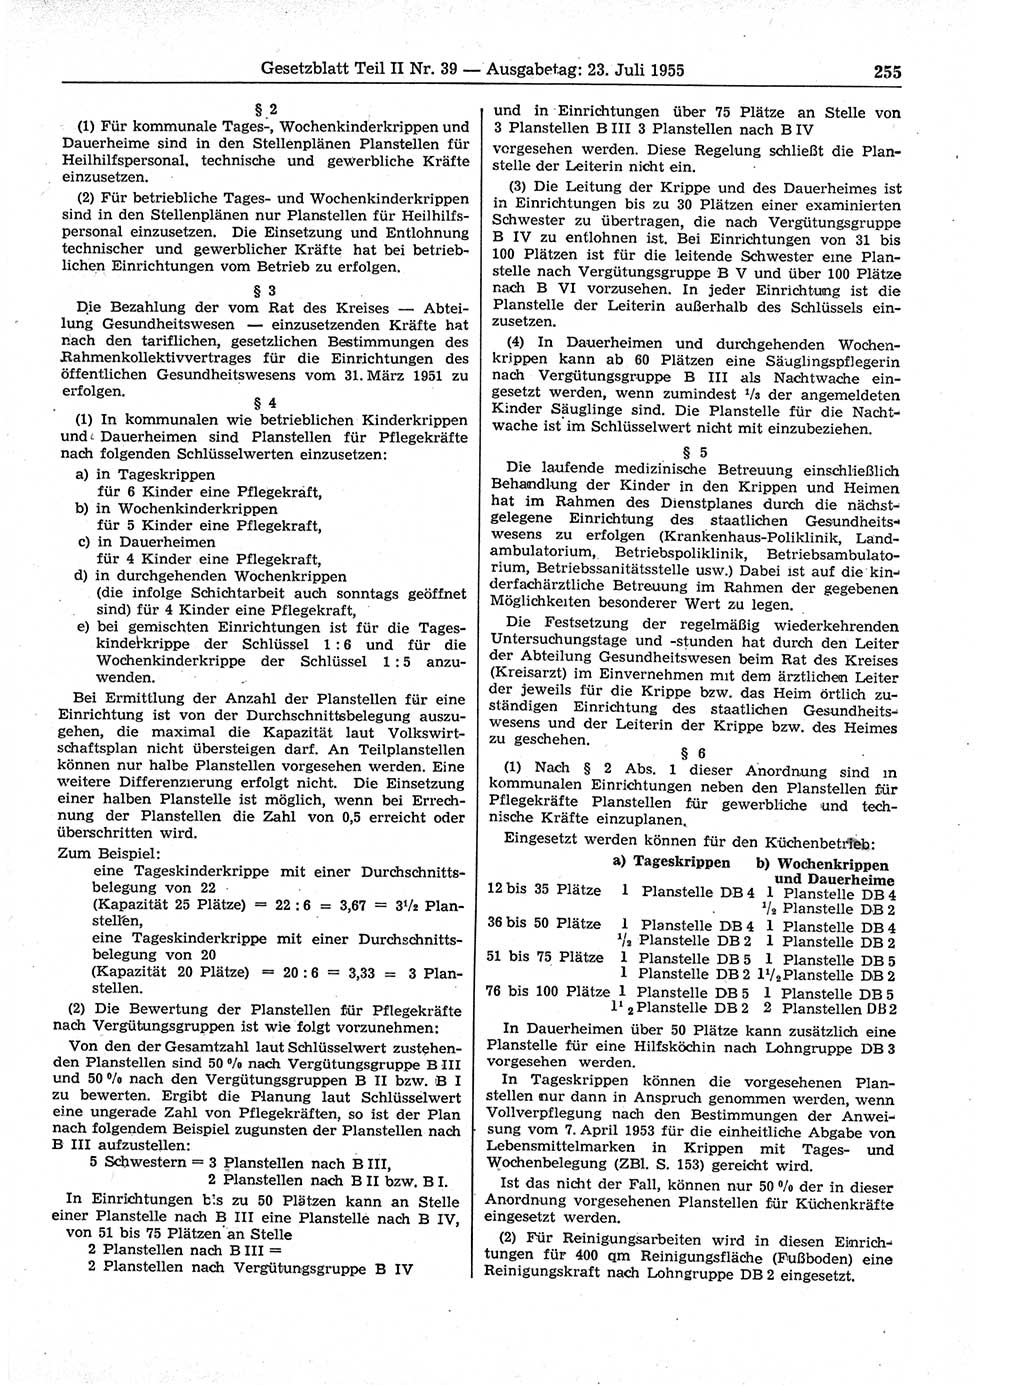 Gesetzblatt (GBl.) der Deutschen Demokratischen Republik (DDR) Teil ⅠⅠ 1955, Seite 255 (GBl. DDR ⅠⅠ 1955, S. 255)